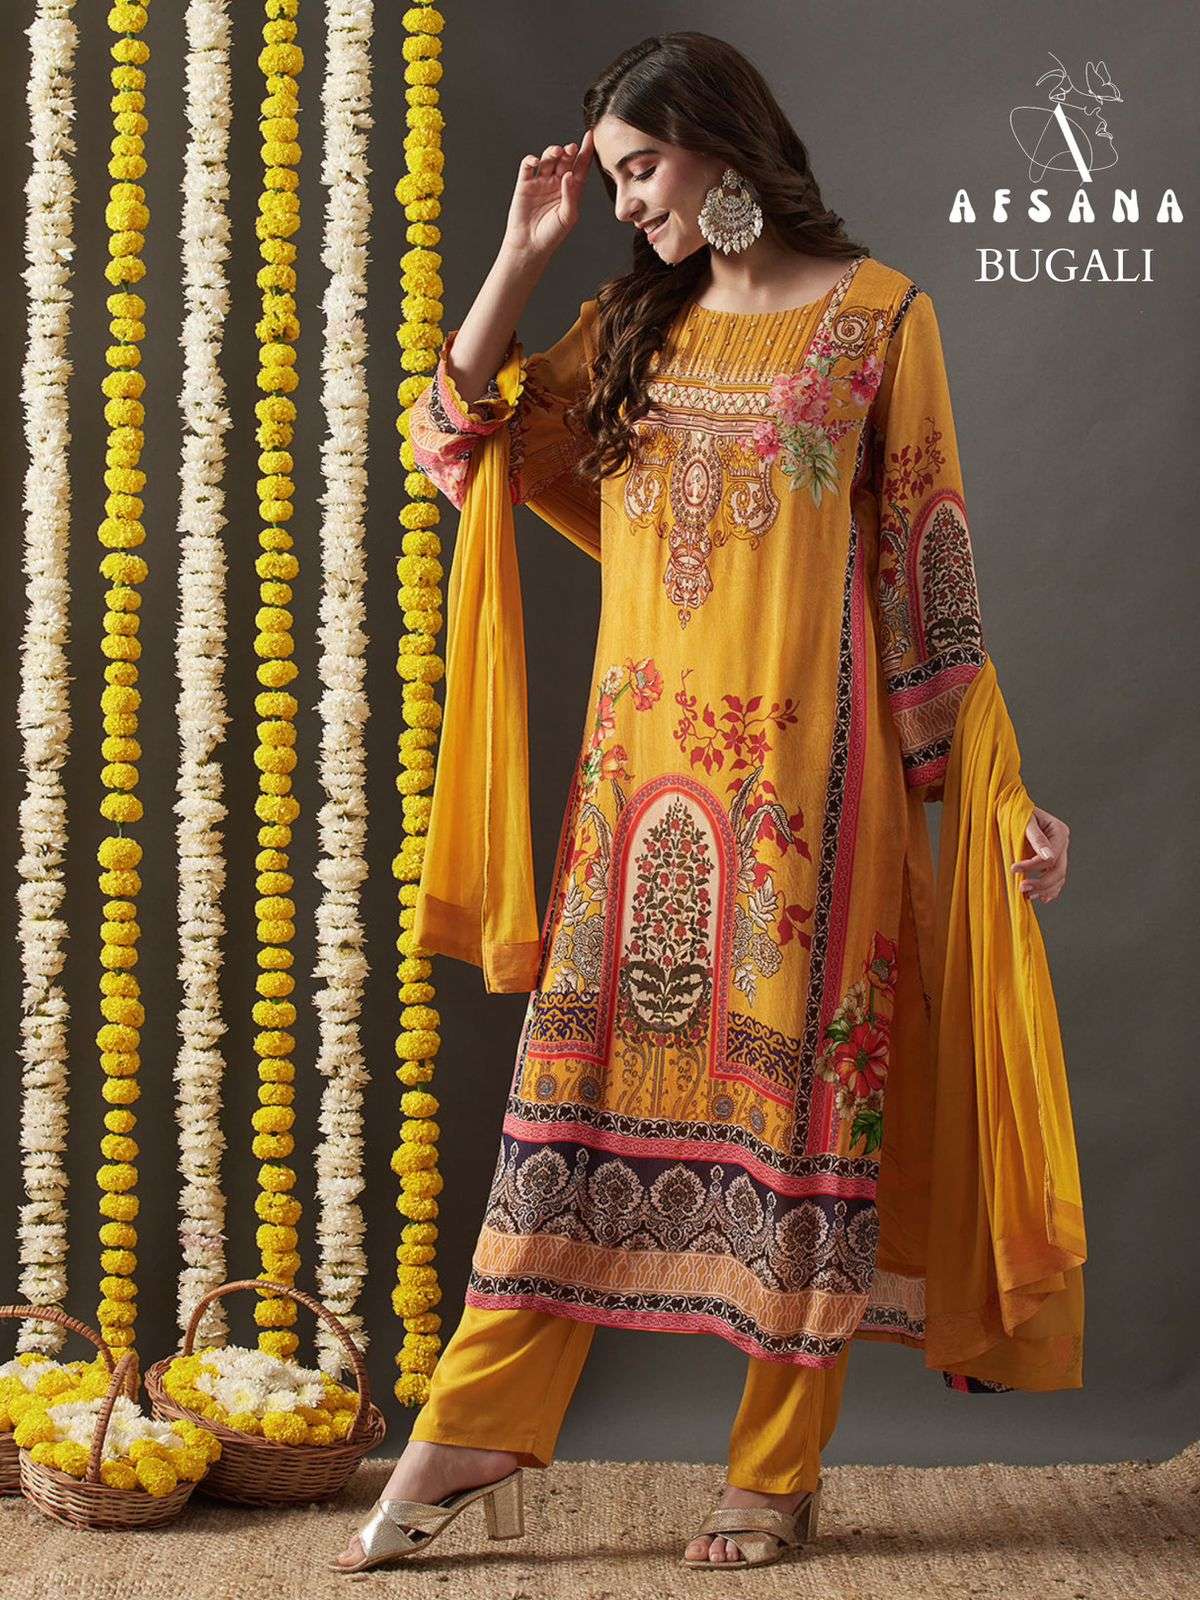 afsana bugali designer ready made anarkali lichi linen salwar kameez wholesale dealer size set collection 